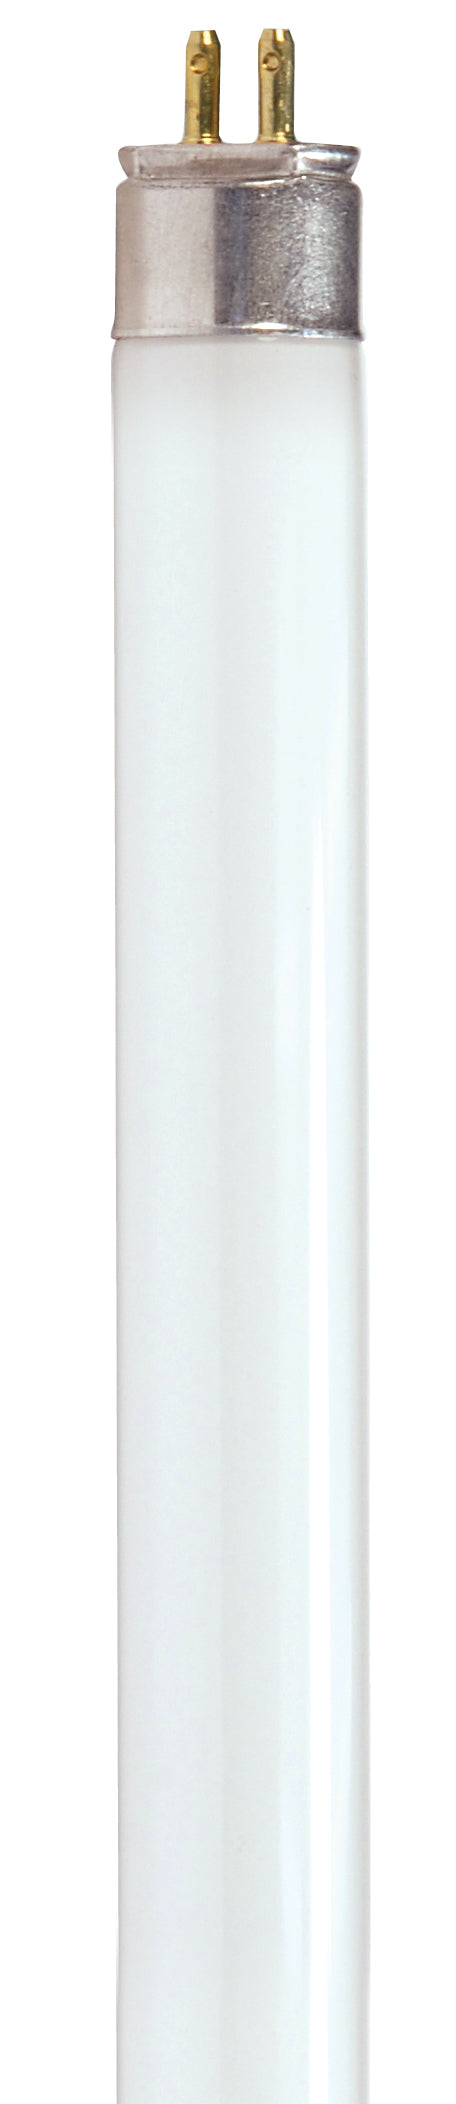 SATCO/NUVO HyGrade 28W T5 Fluorescent 3000K Warm White 85 CRI Miniature Bi-Pin Base (S8131)